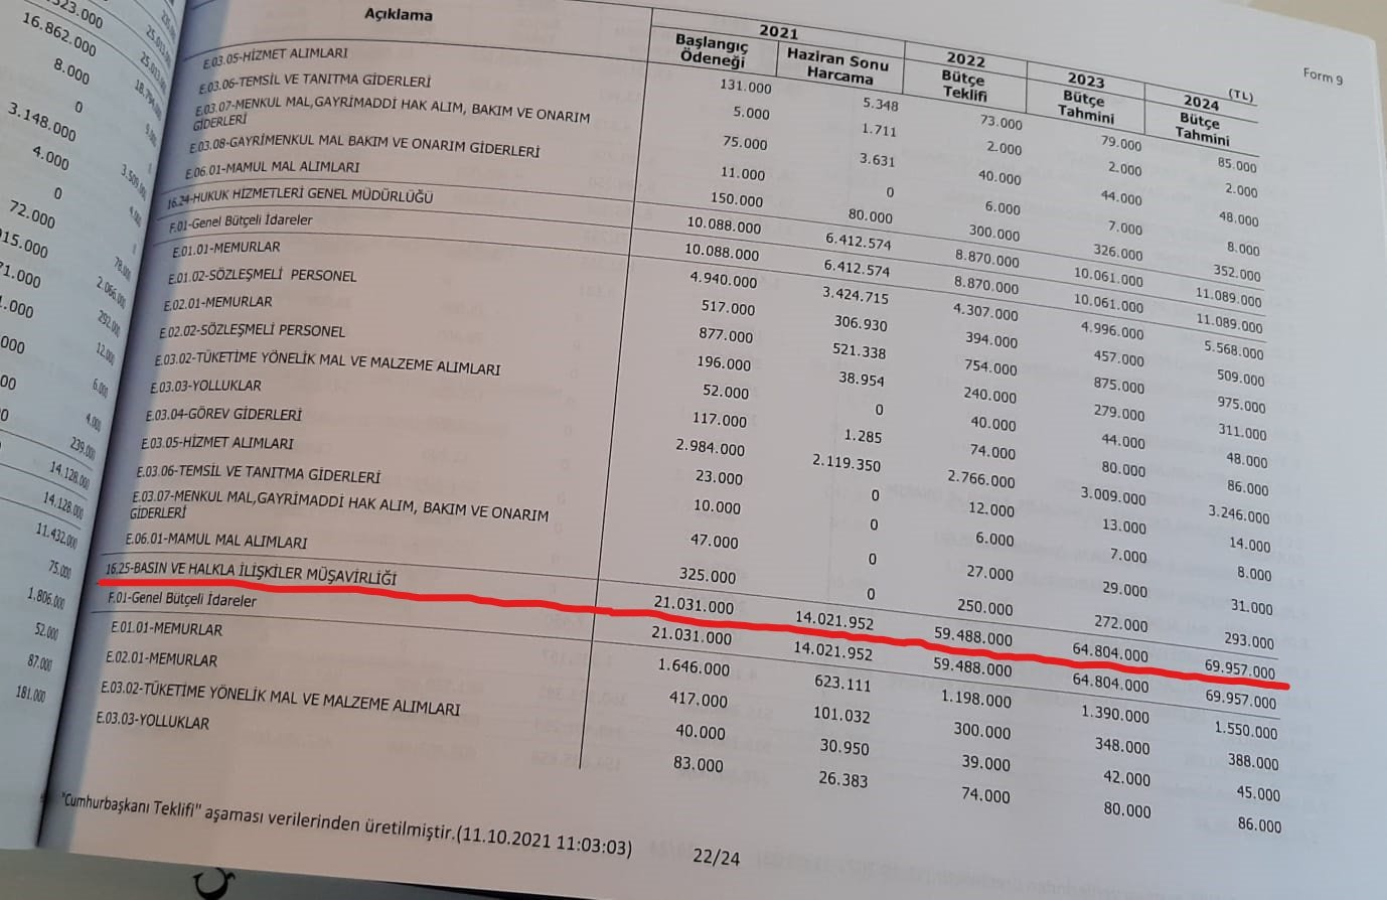 CHP'li Tanal, 'son dakika' notuyla paylaştı: Saray’ın 2022 bütçesinde erken seçim detayı!